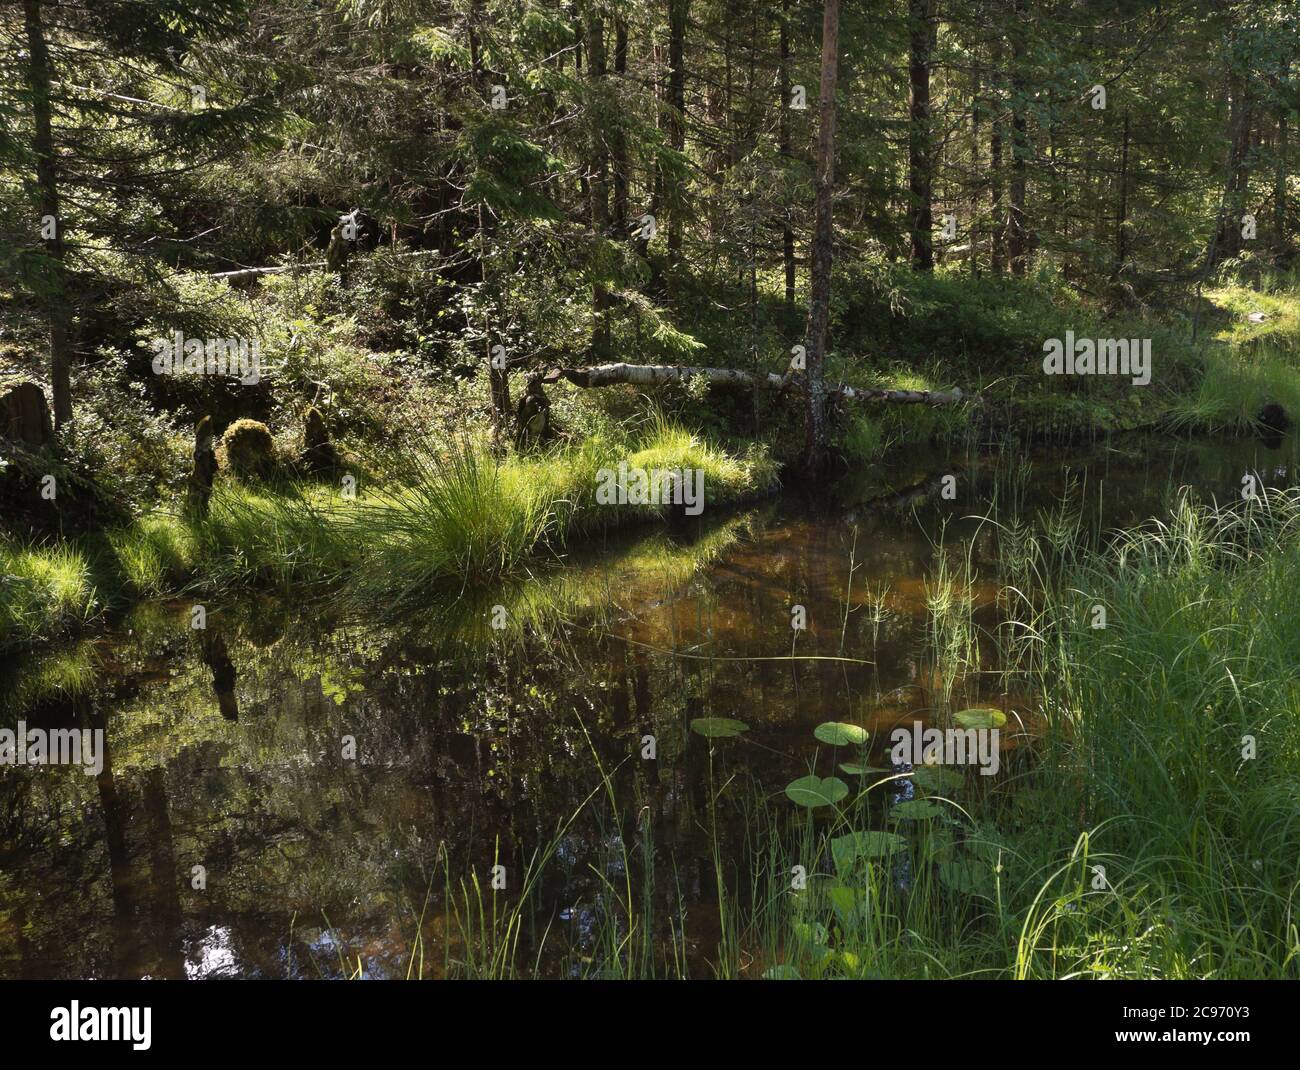 Estate idilliaca nella foresta di Ostmarka a Oslo Norvegia, sole e ombra, alberi, riflessi d'acqua e erba in sfumature di verde Foto Stock